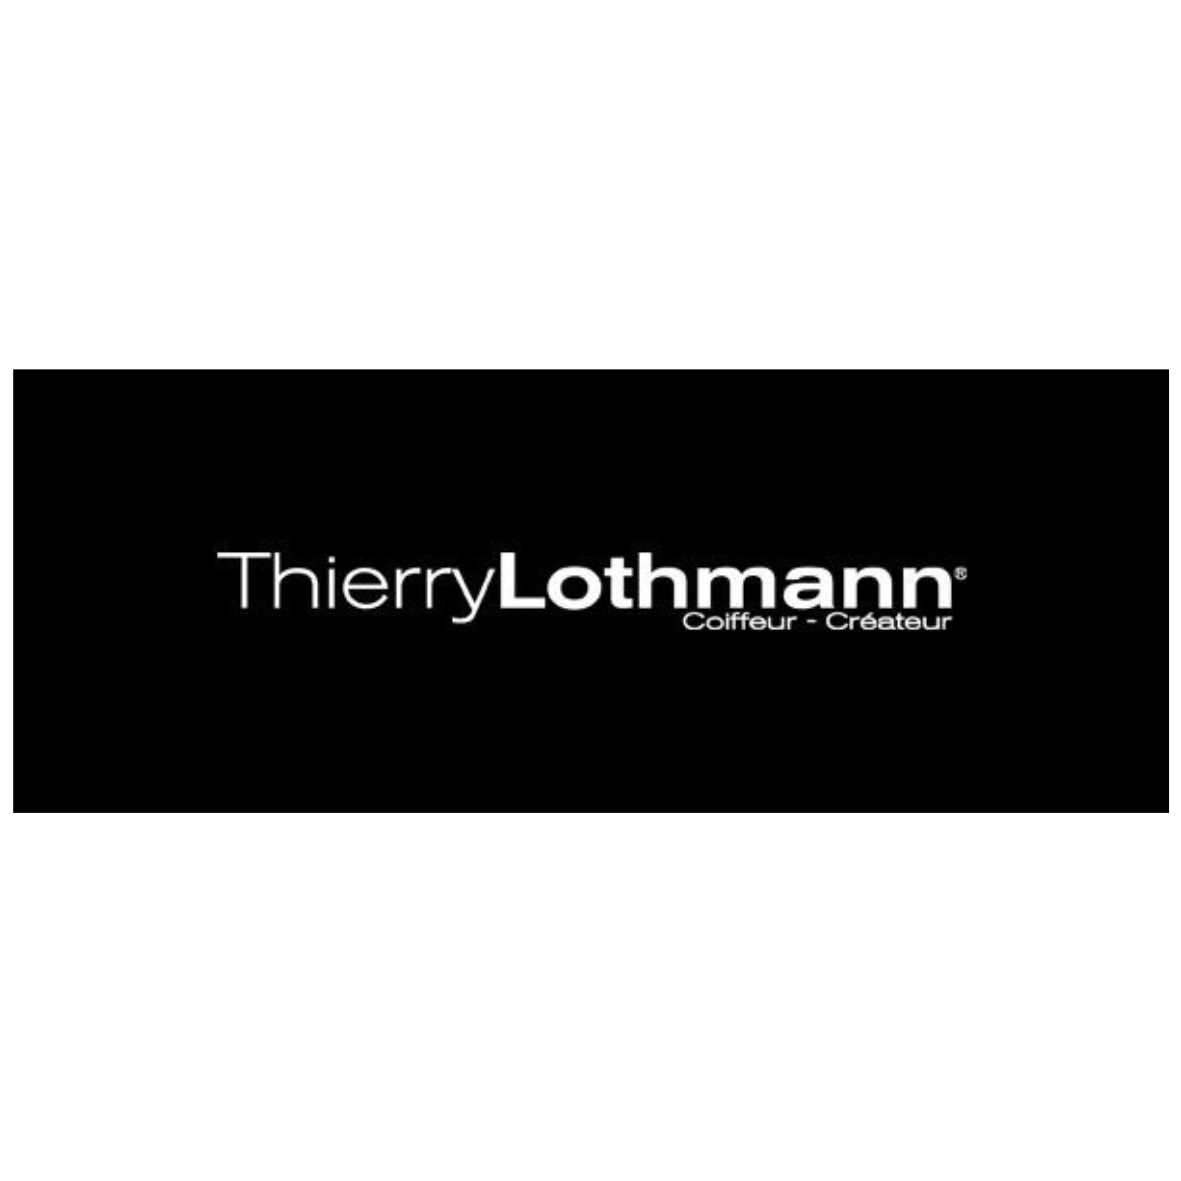 logo société thierry lothmann